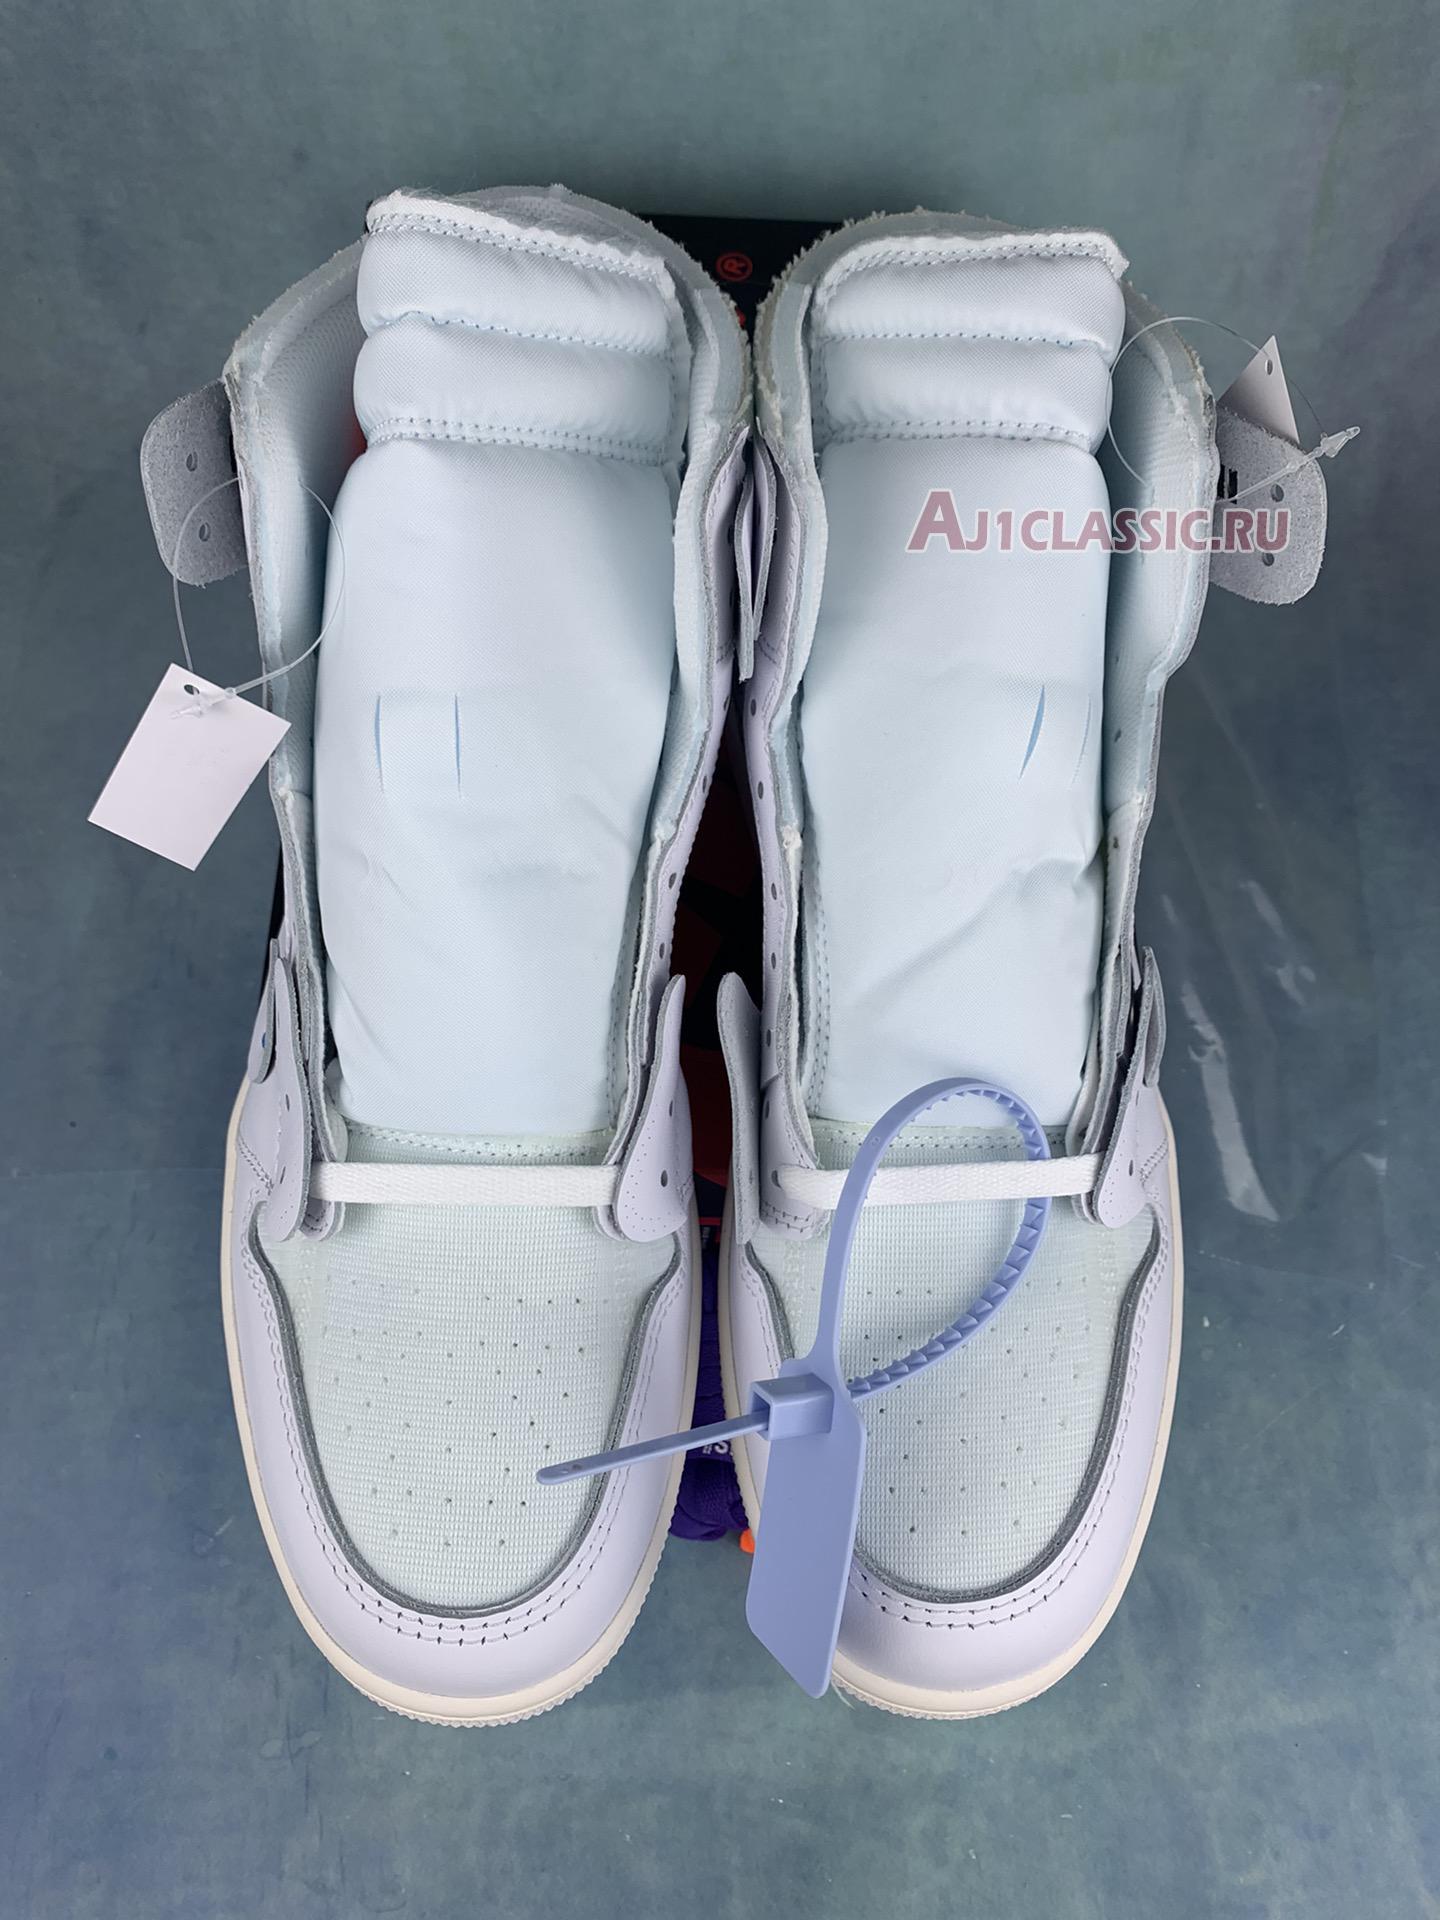 Off-White x Air Jordan 1 Retro High OG "White" AQ0818-100-3